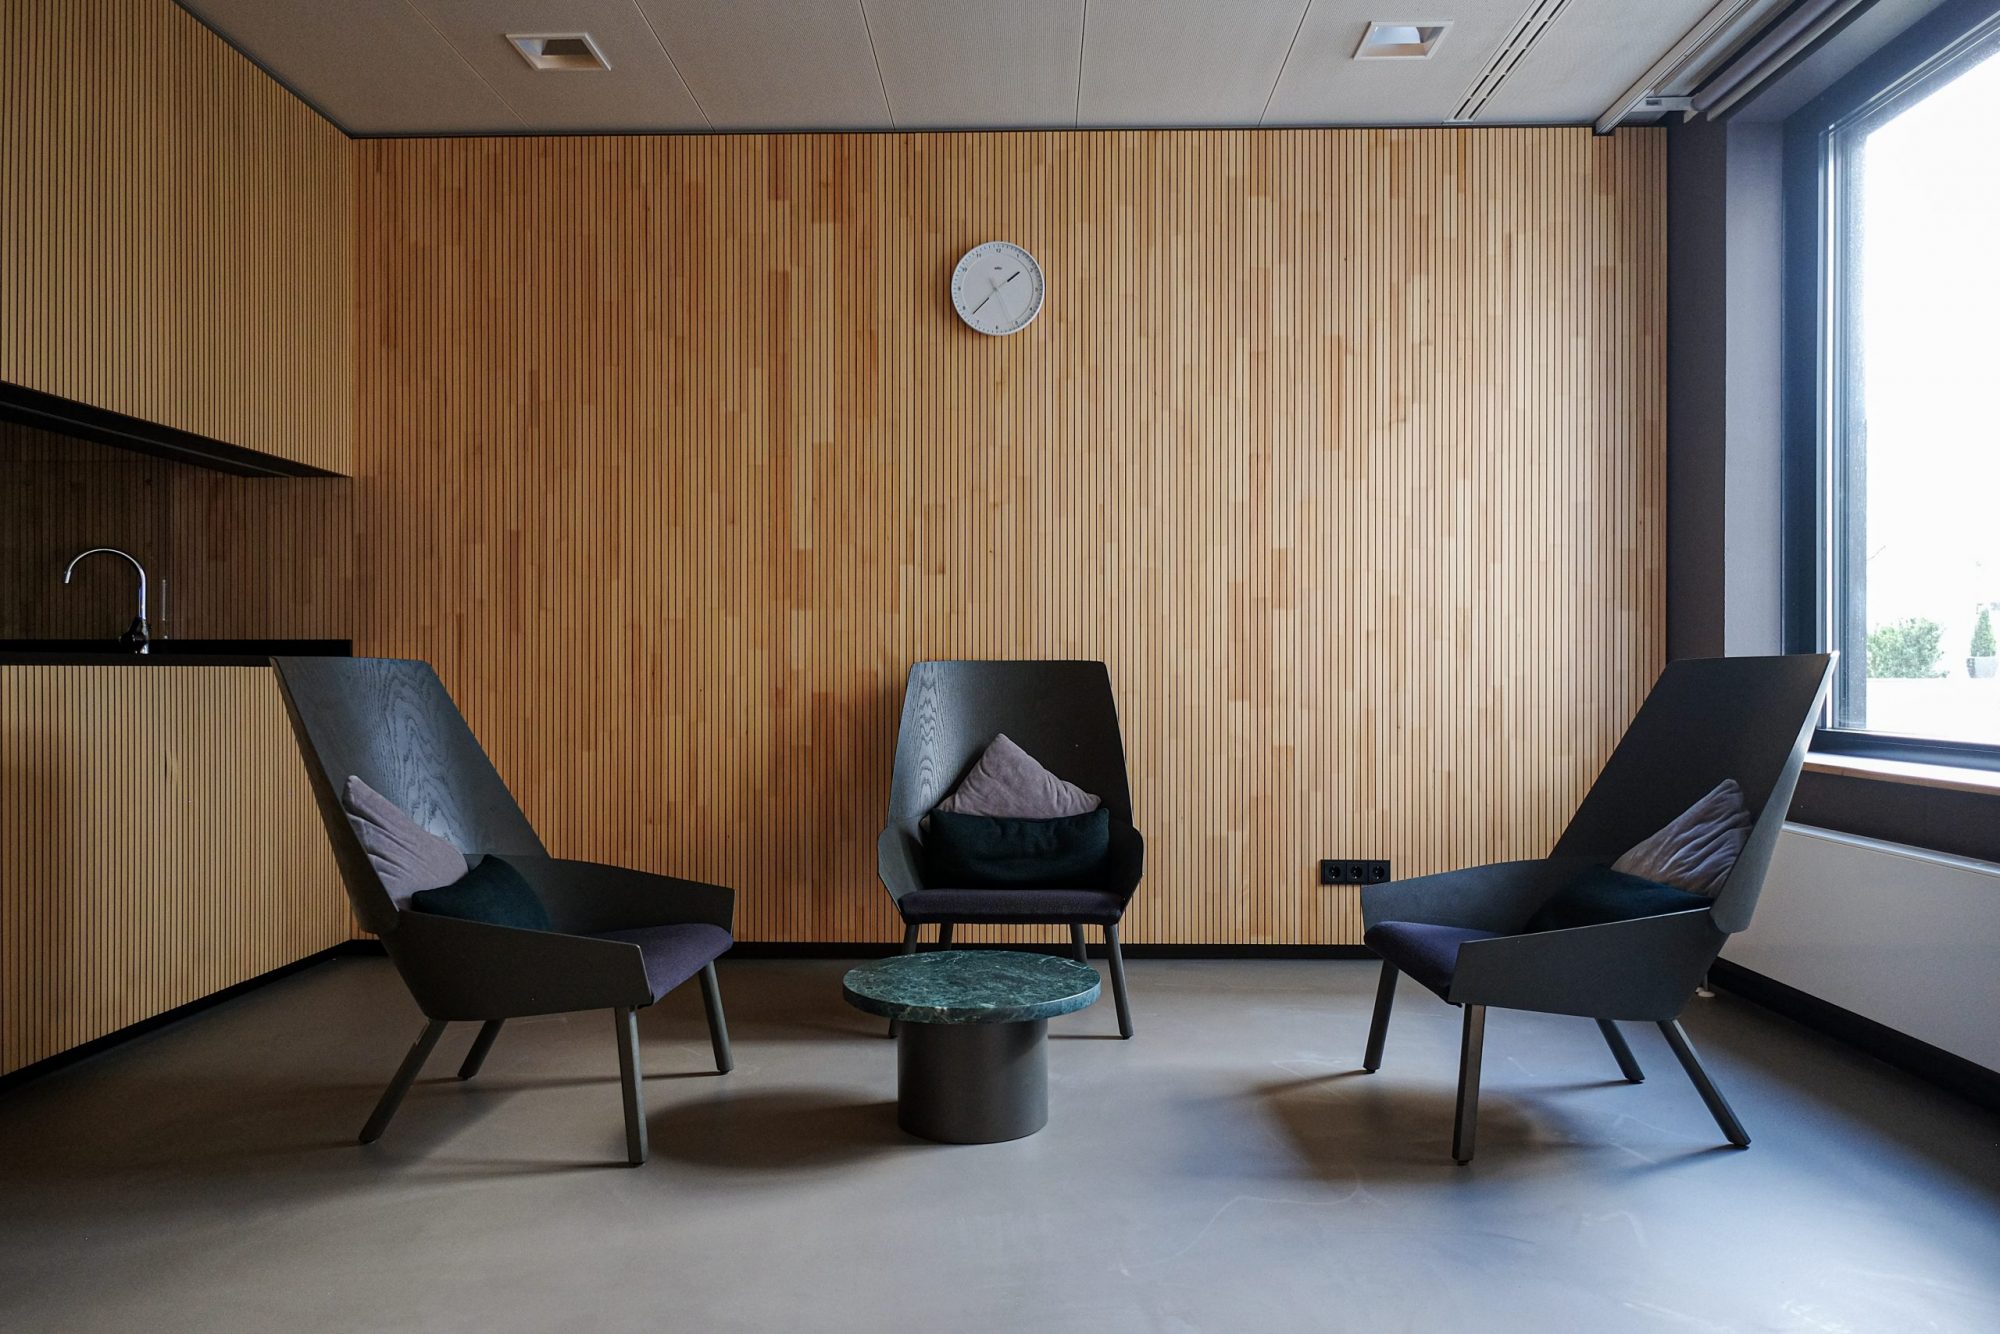 Wartezimmer mit Stühle von Ikea und Kaffeetisch von Bolia designed von Markmus Design für Consorsbank in Nürnberg. Hospitality Gestaltung mit Geschmack. 